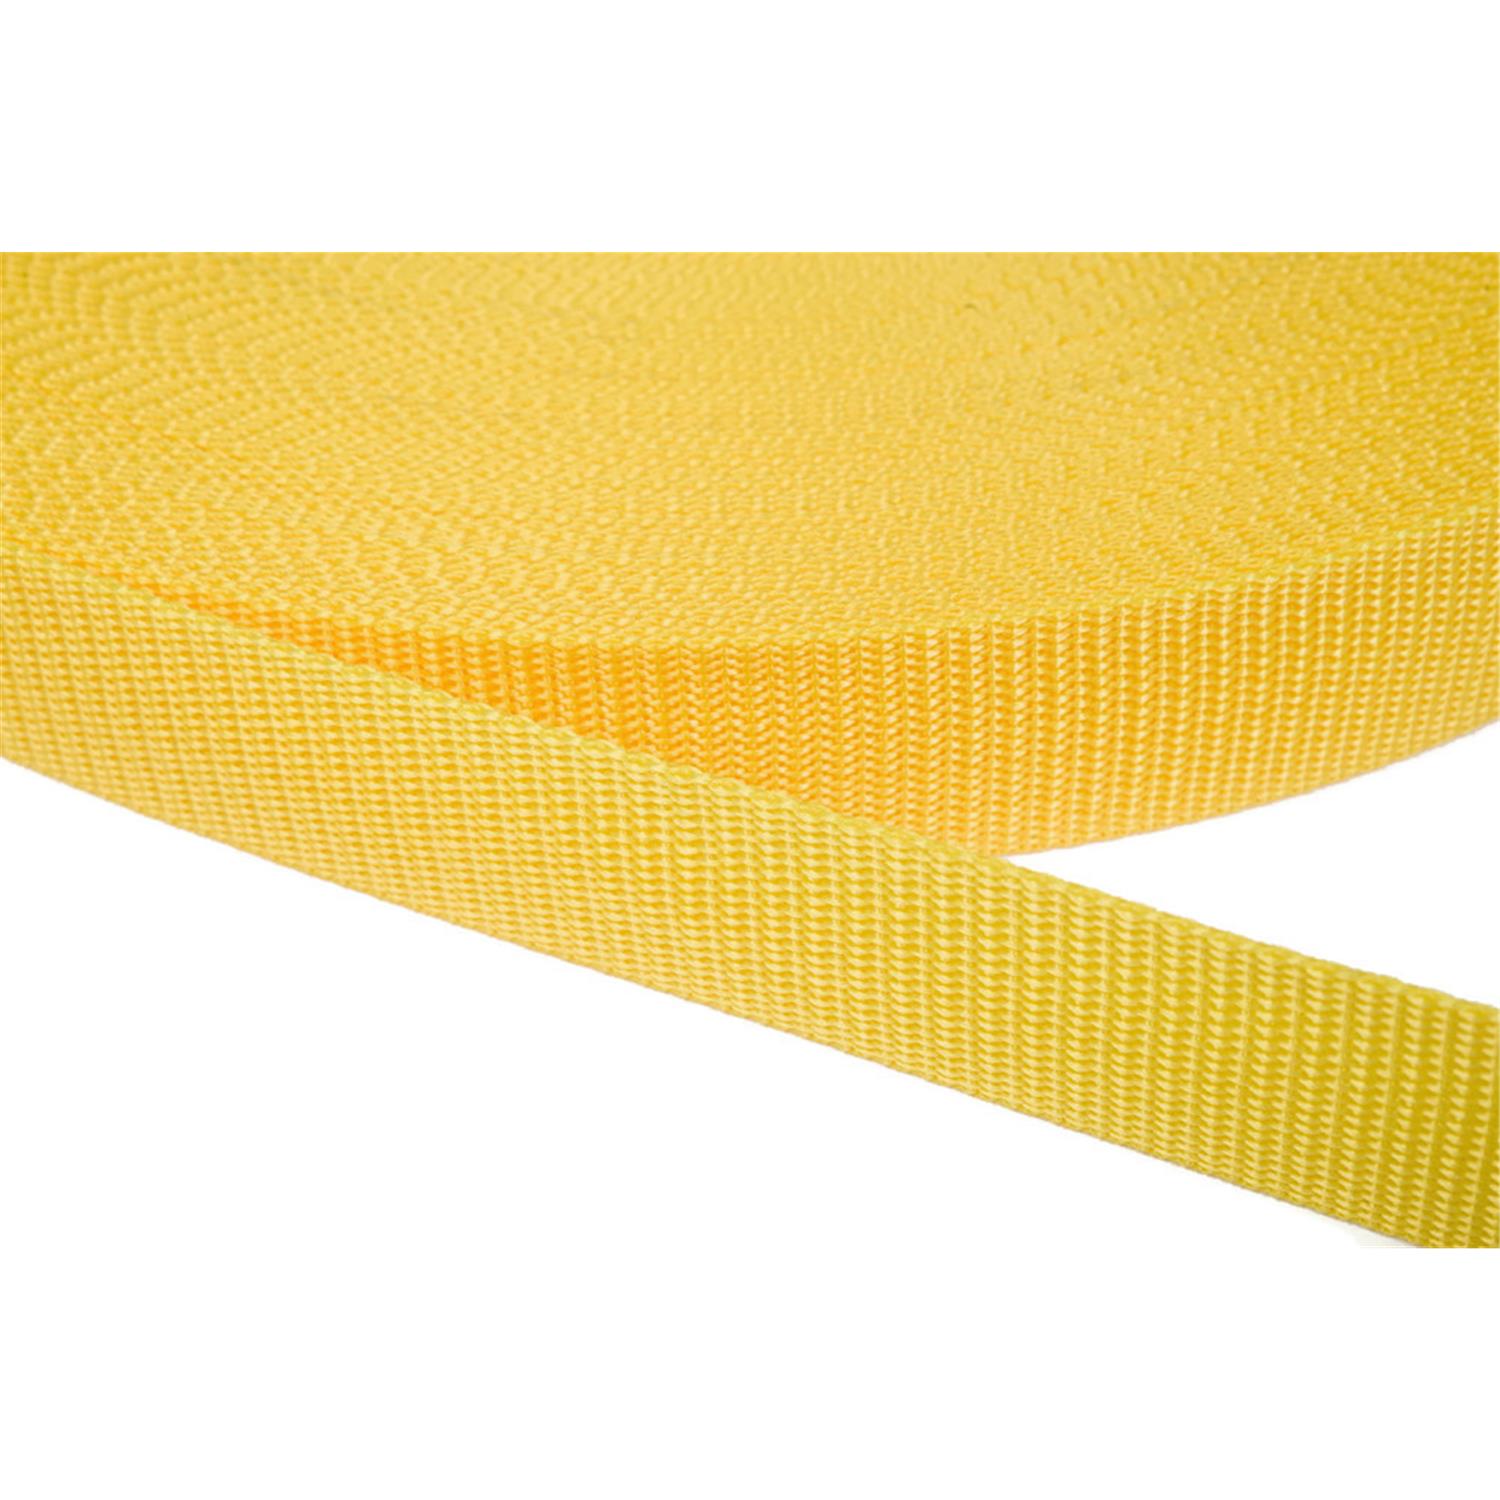 Gurtband 40mm breit aus Polypropylen in 41 Farben 10 - gelb 6 Meter